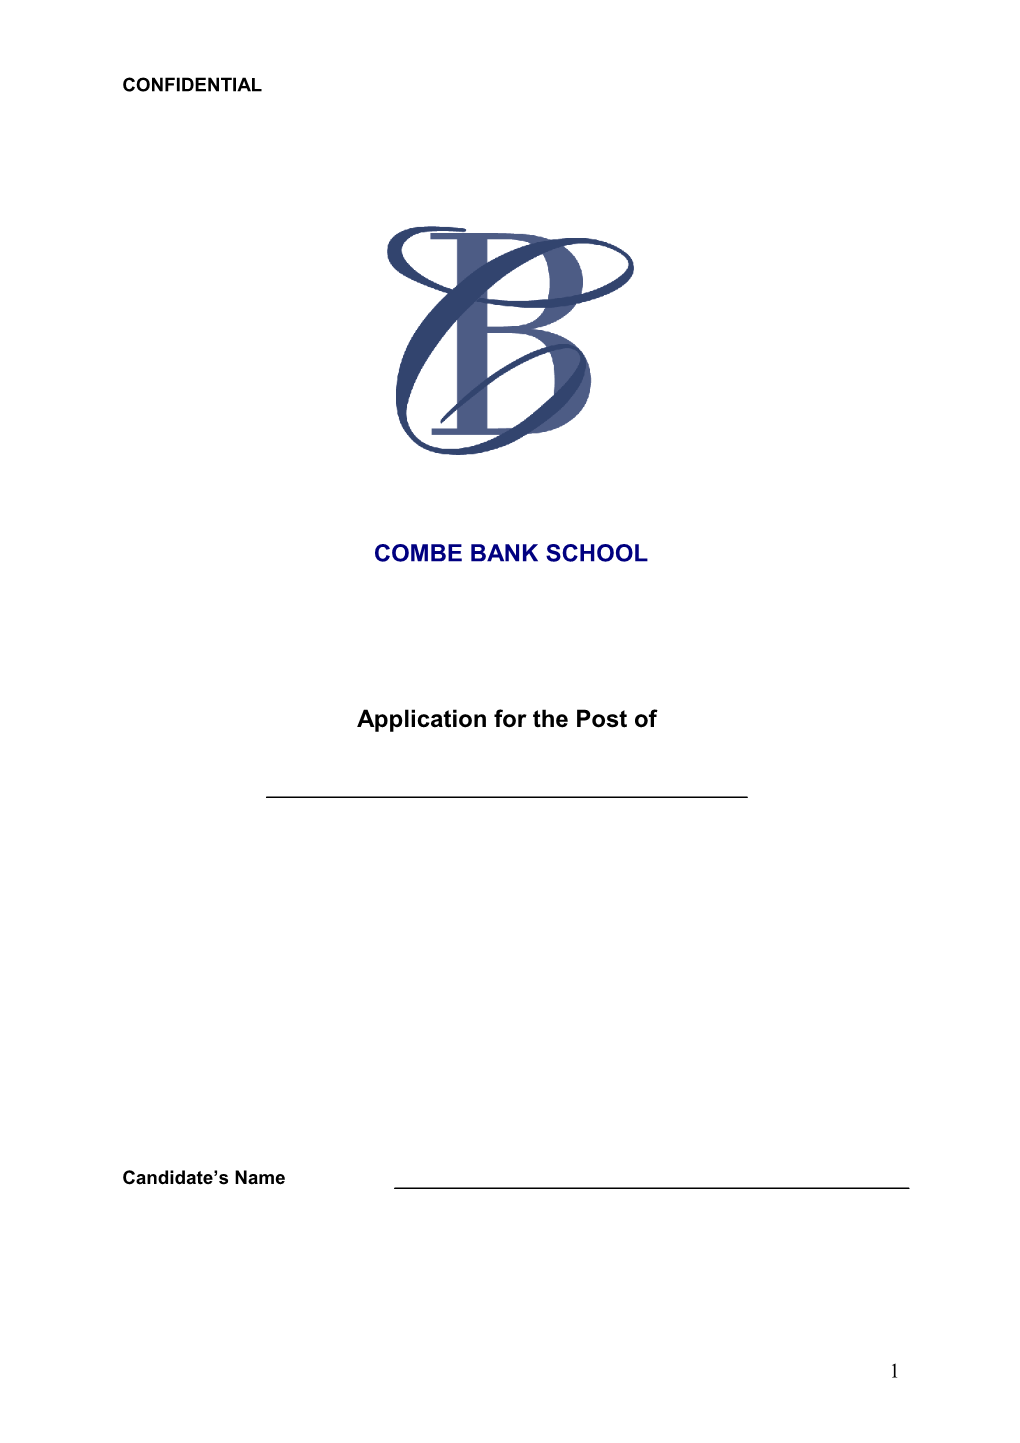 Combe Bank School